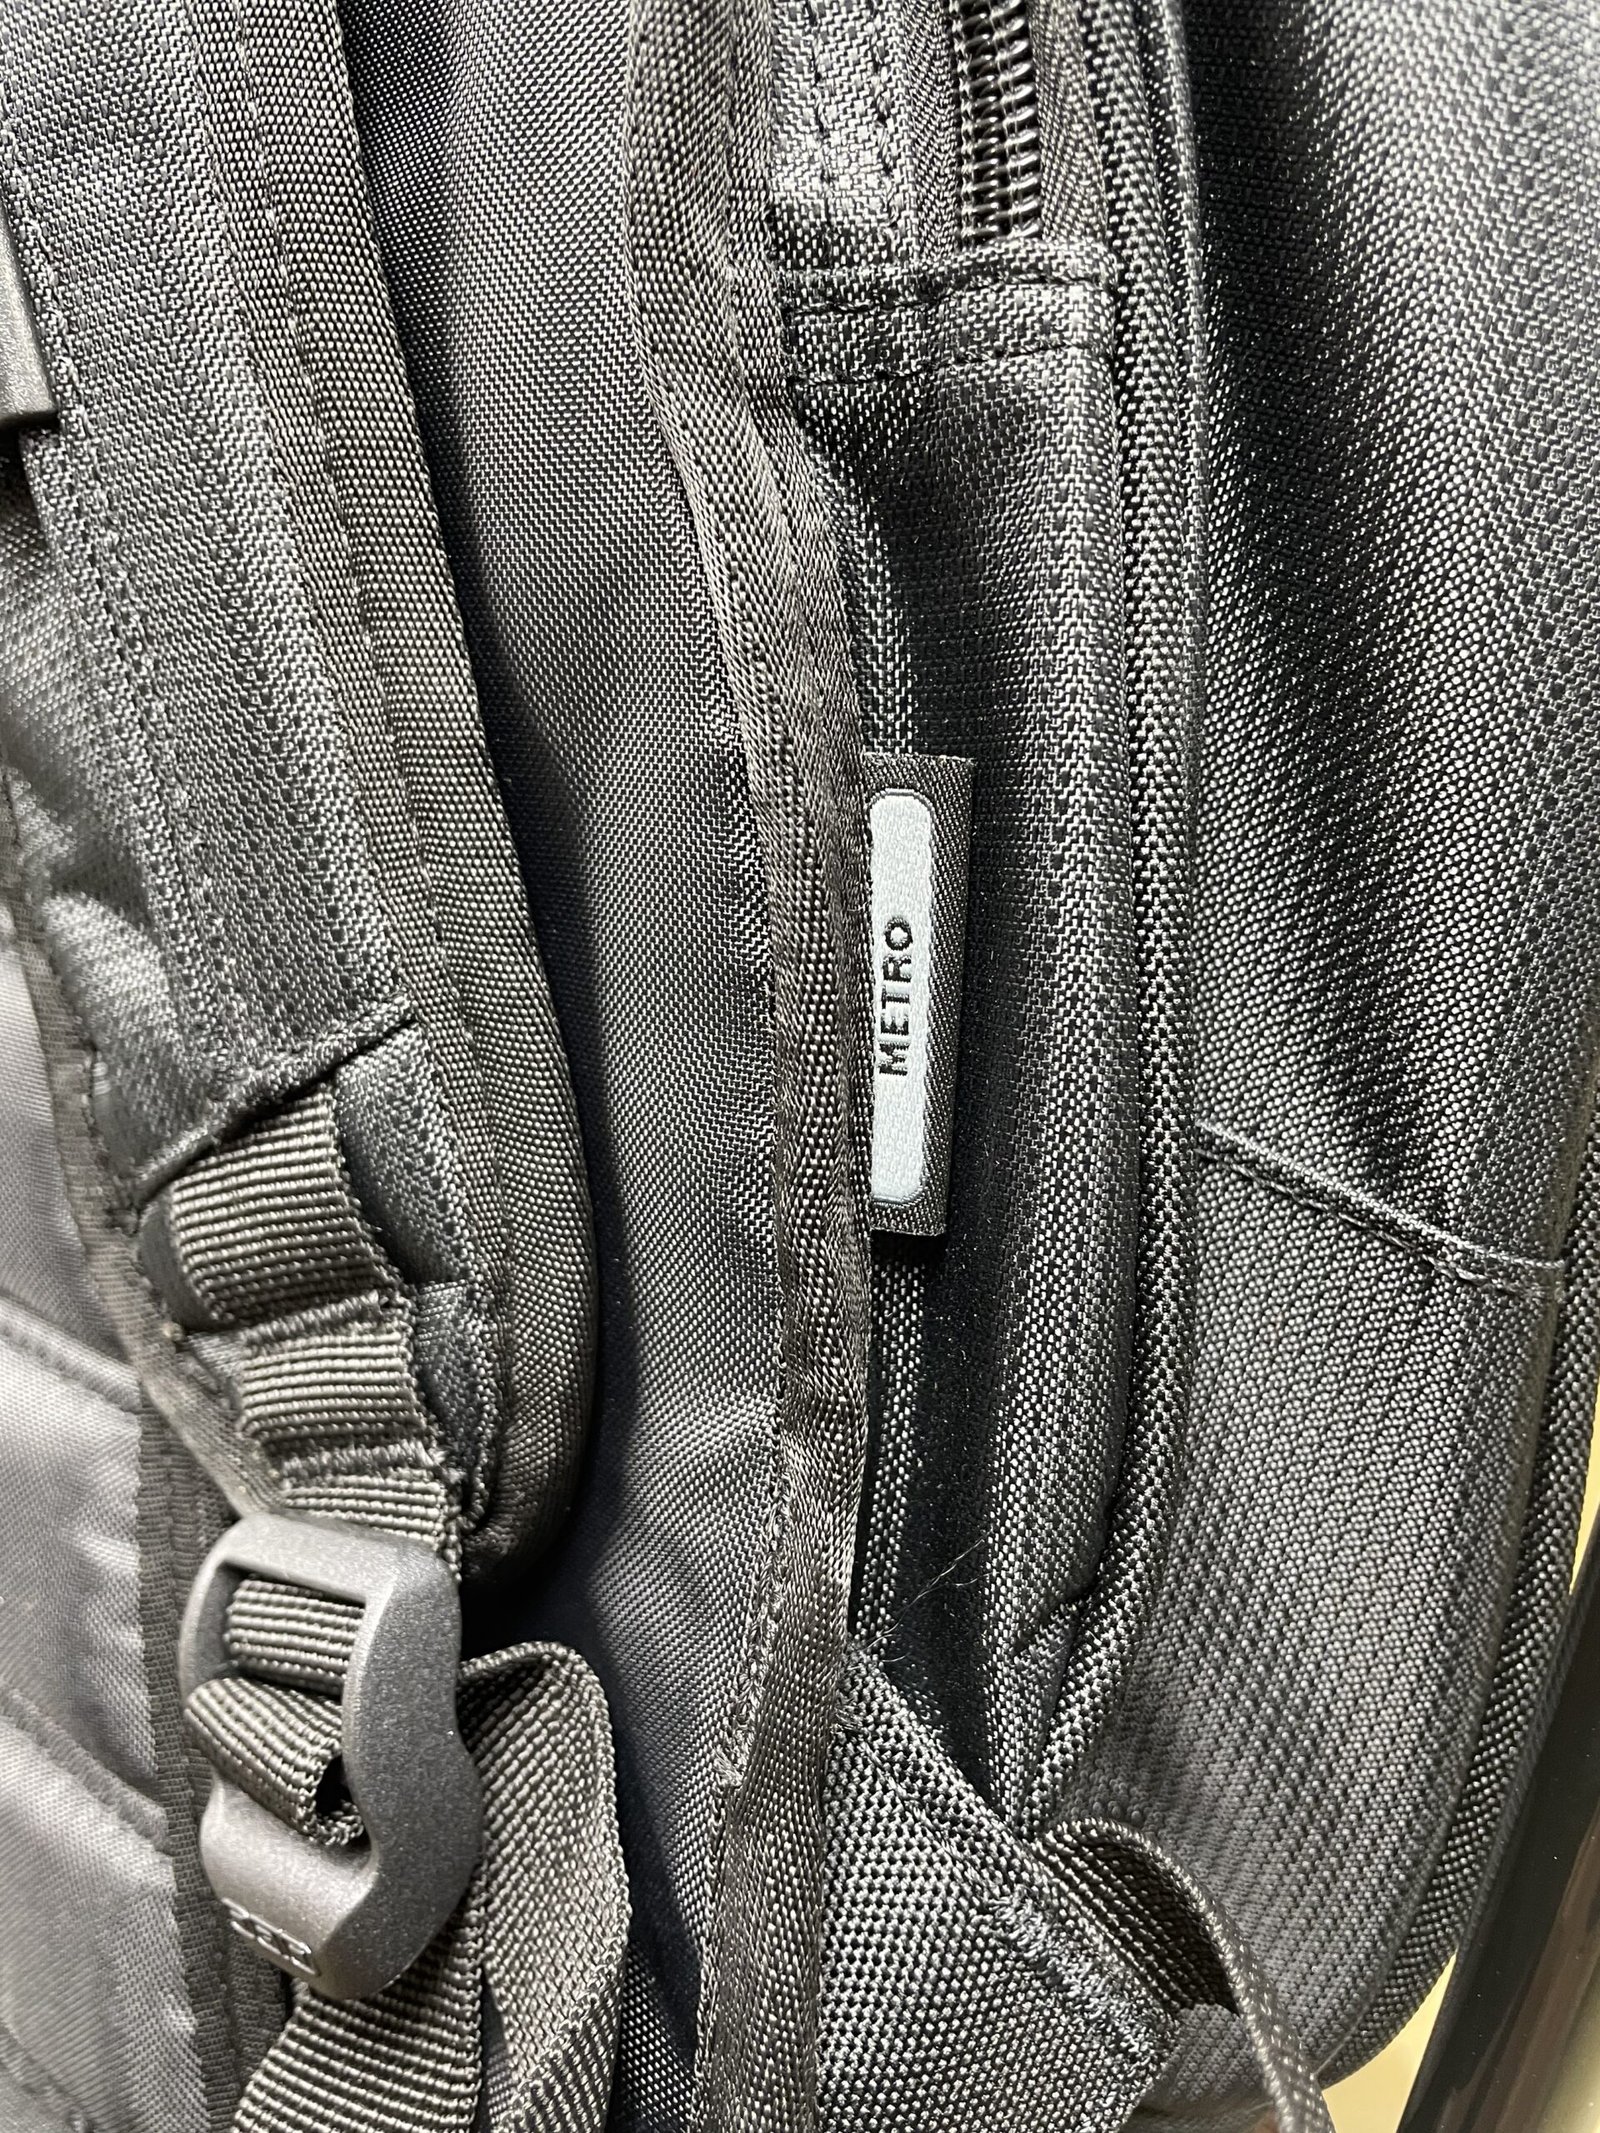 KTR Backpack side